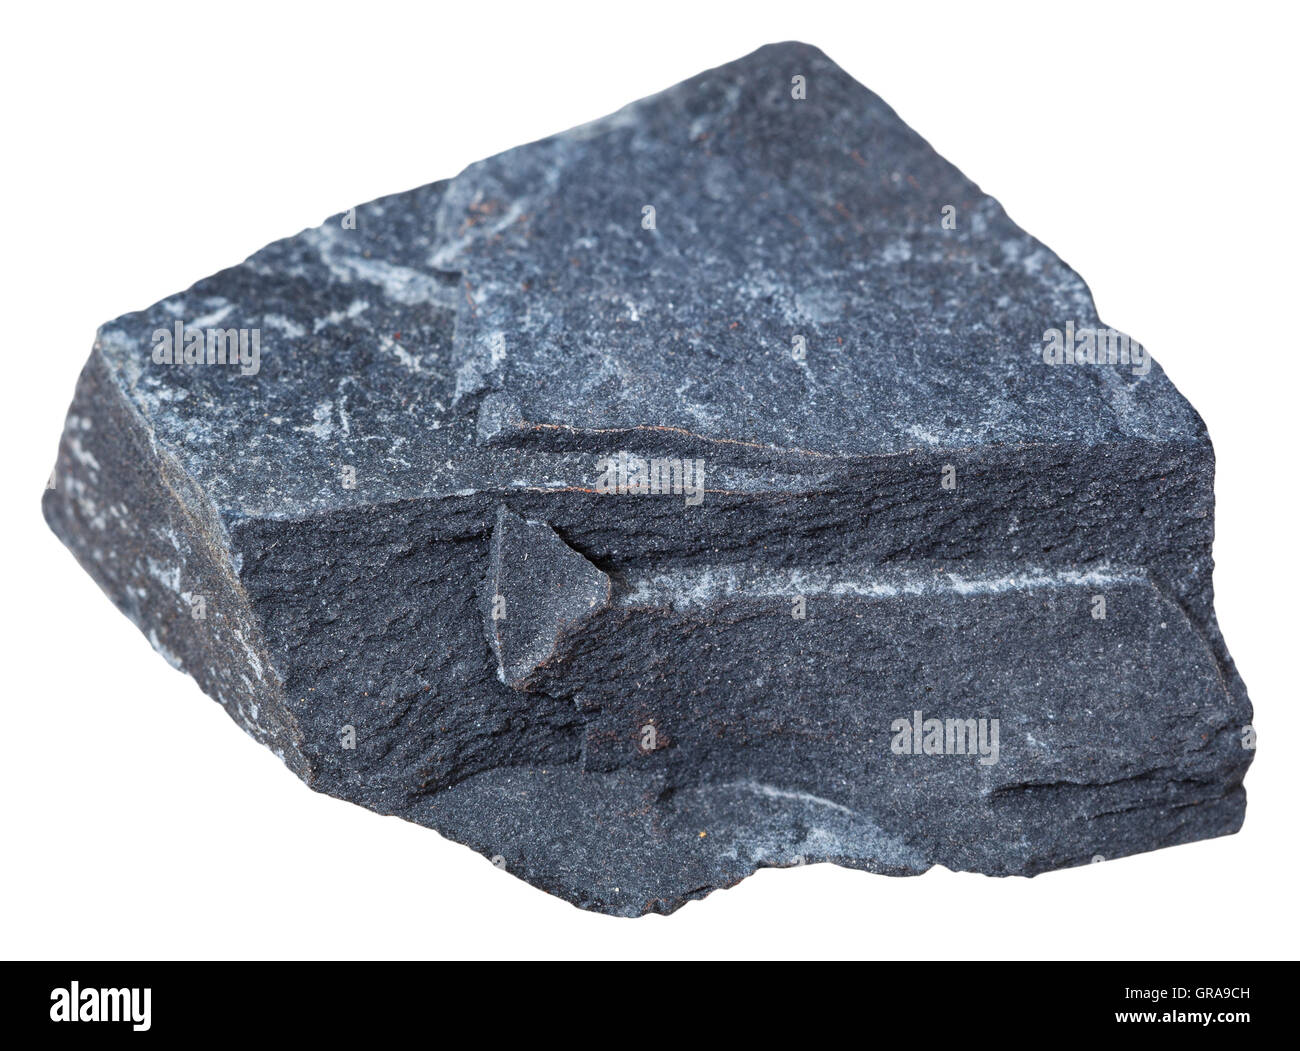 Makroaufnahmen von Sedimentgestein Proben - Tonschiefer (Tonstein) Mineral isoliert auf weißem Hintergrund Stockfoto